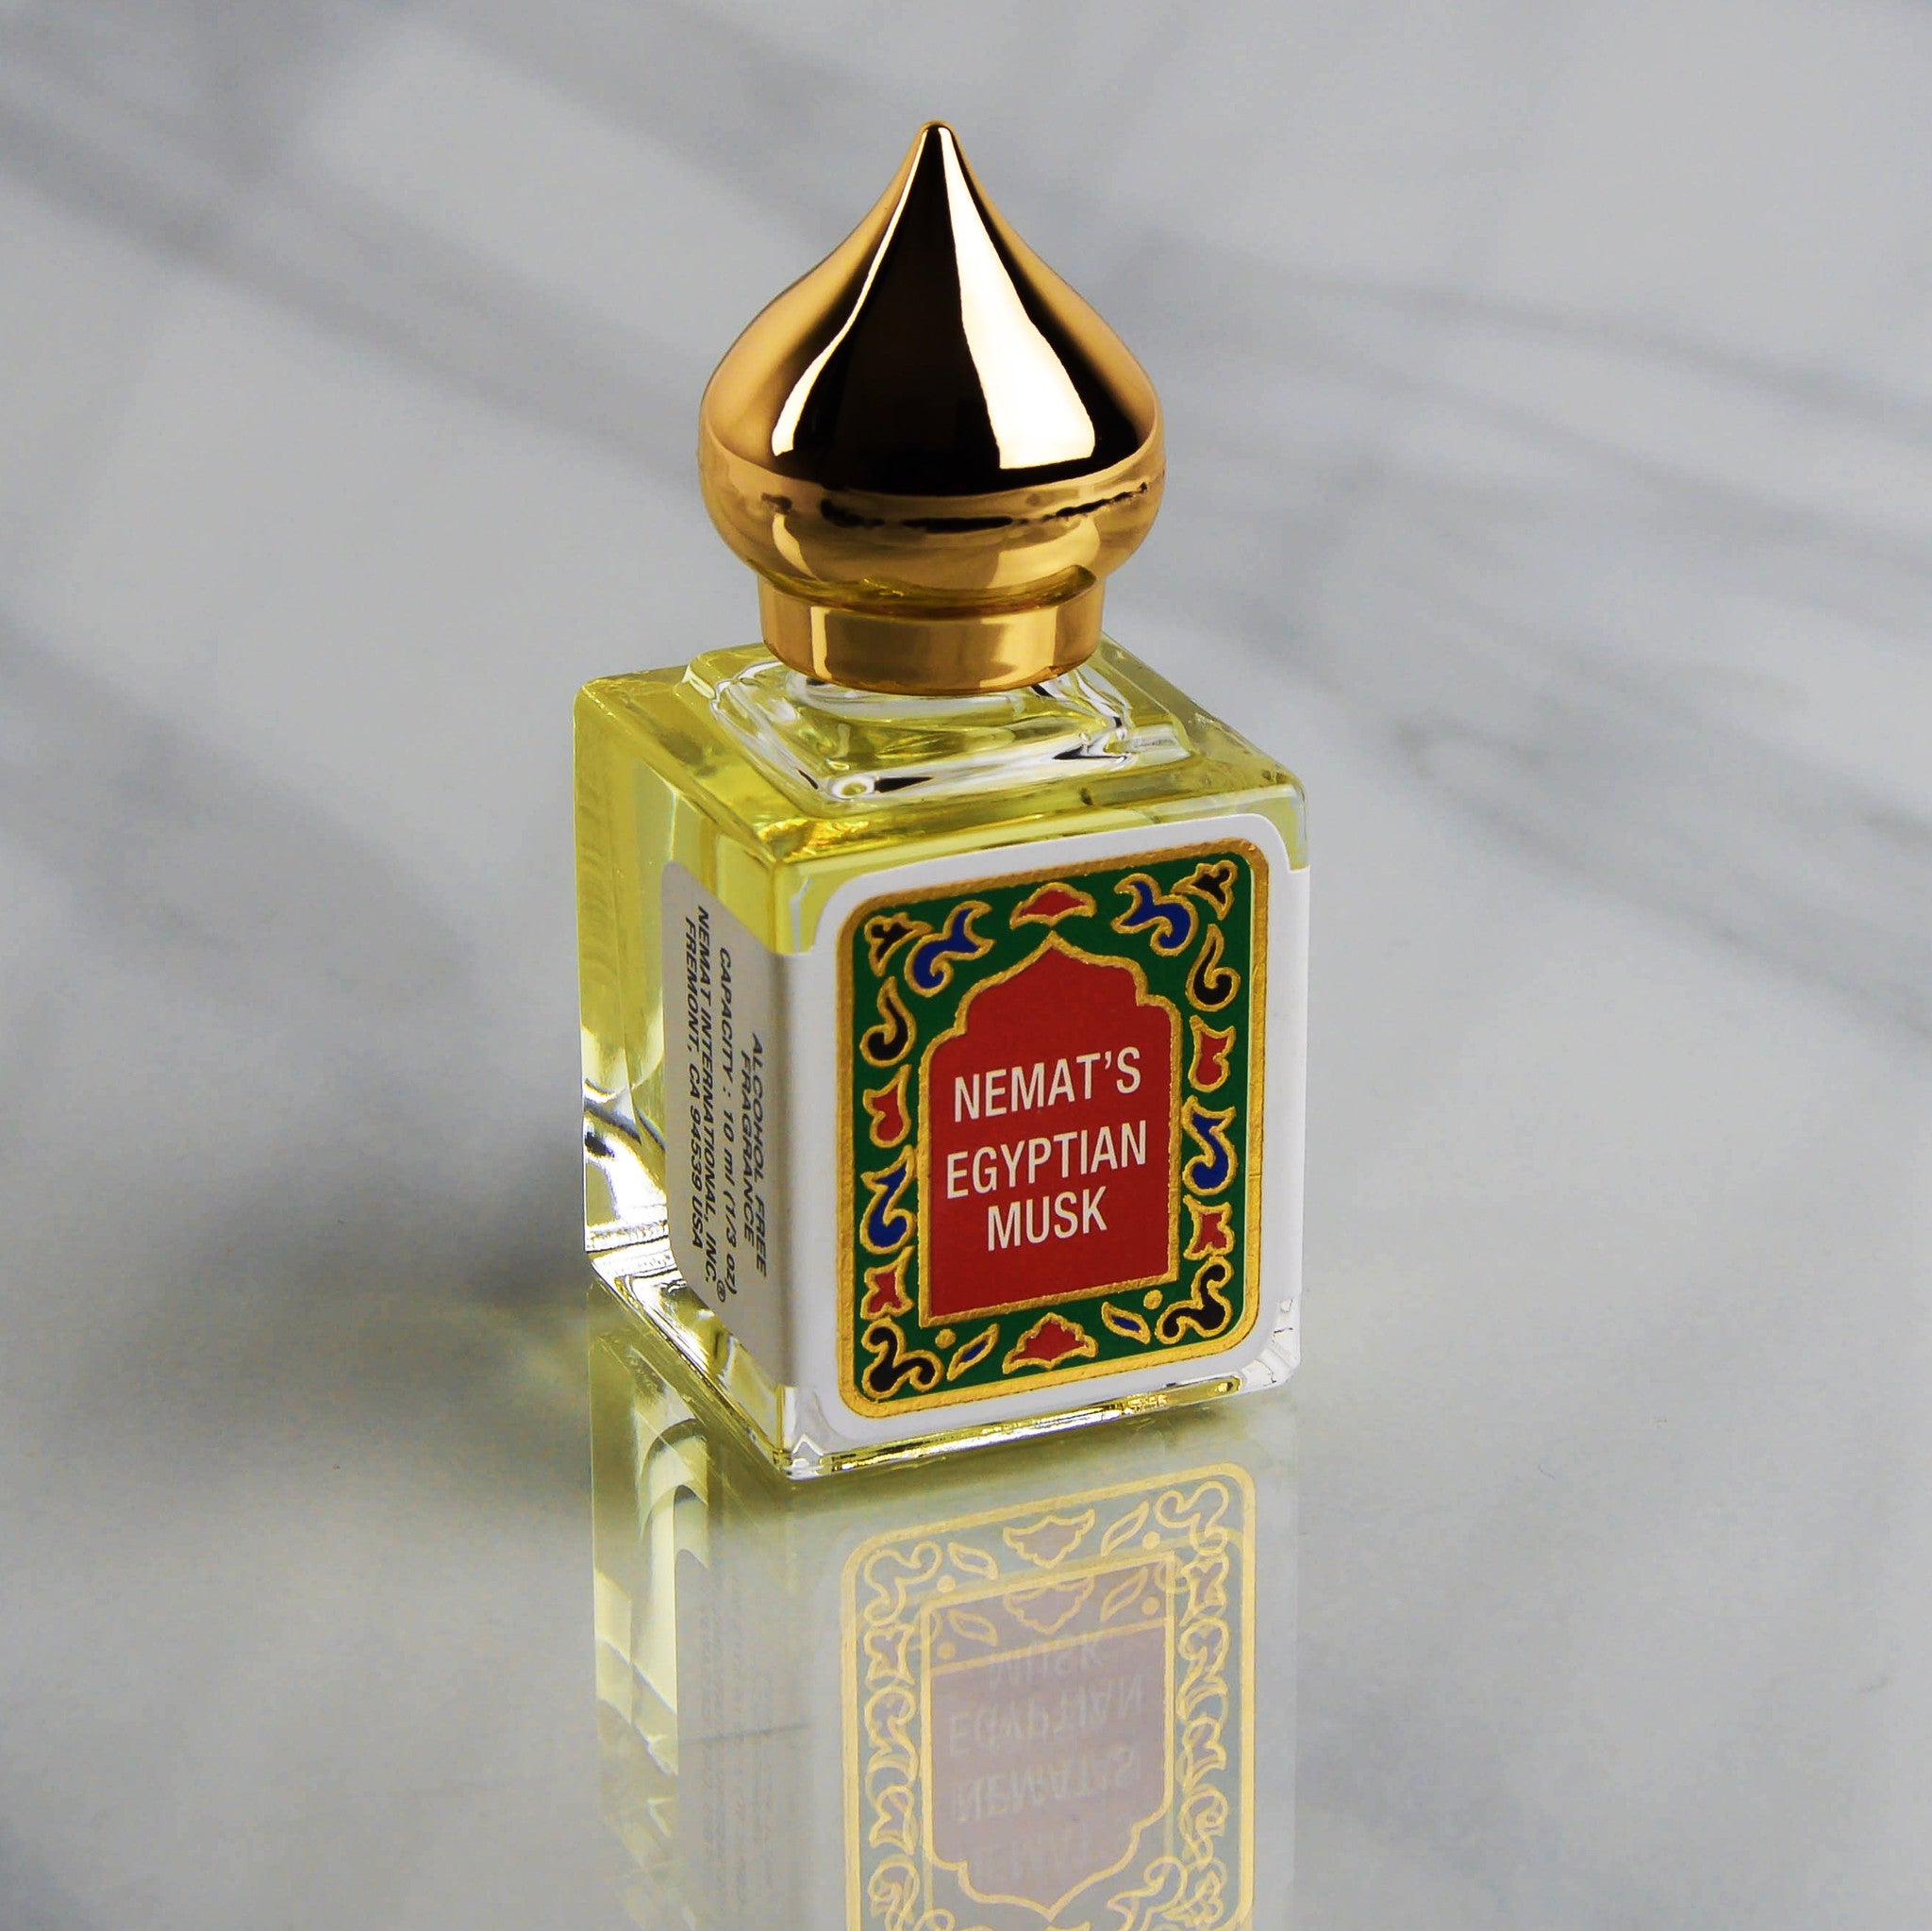 Egyptian Musk Fragrance Oil